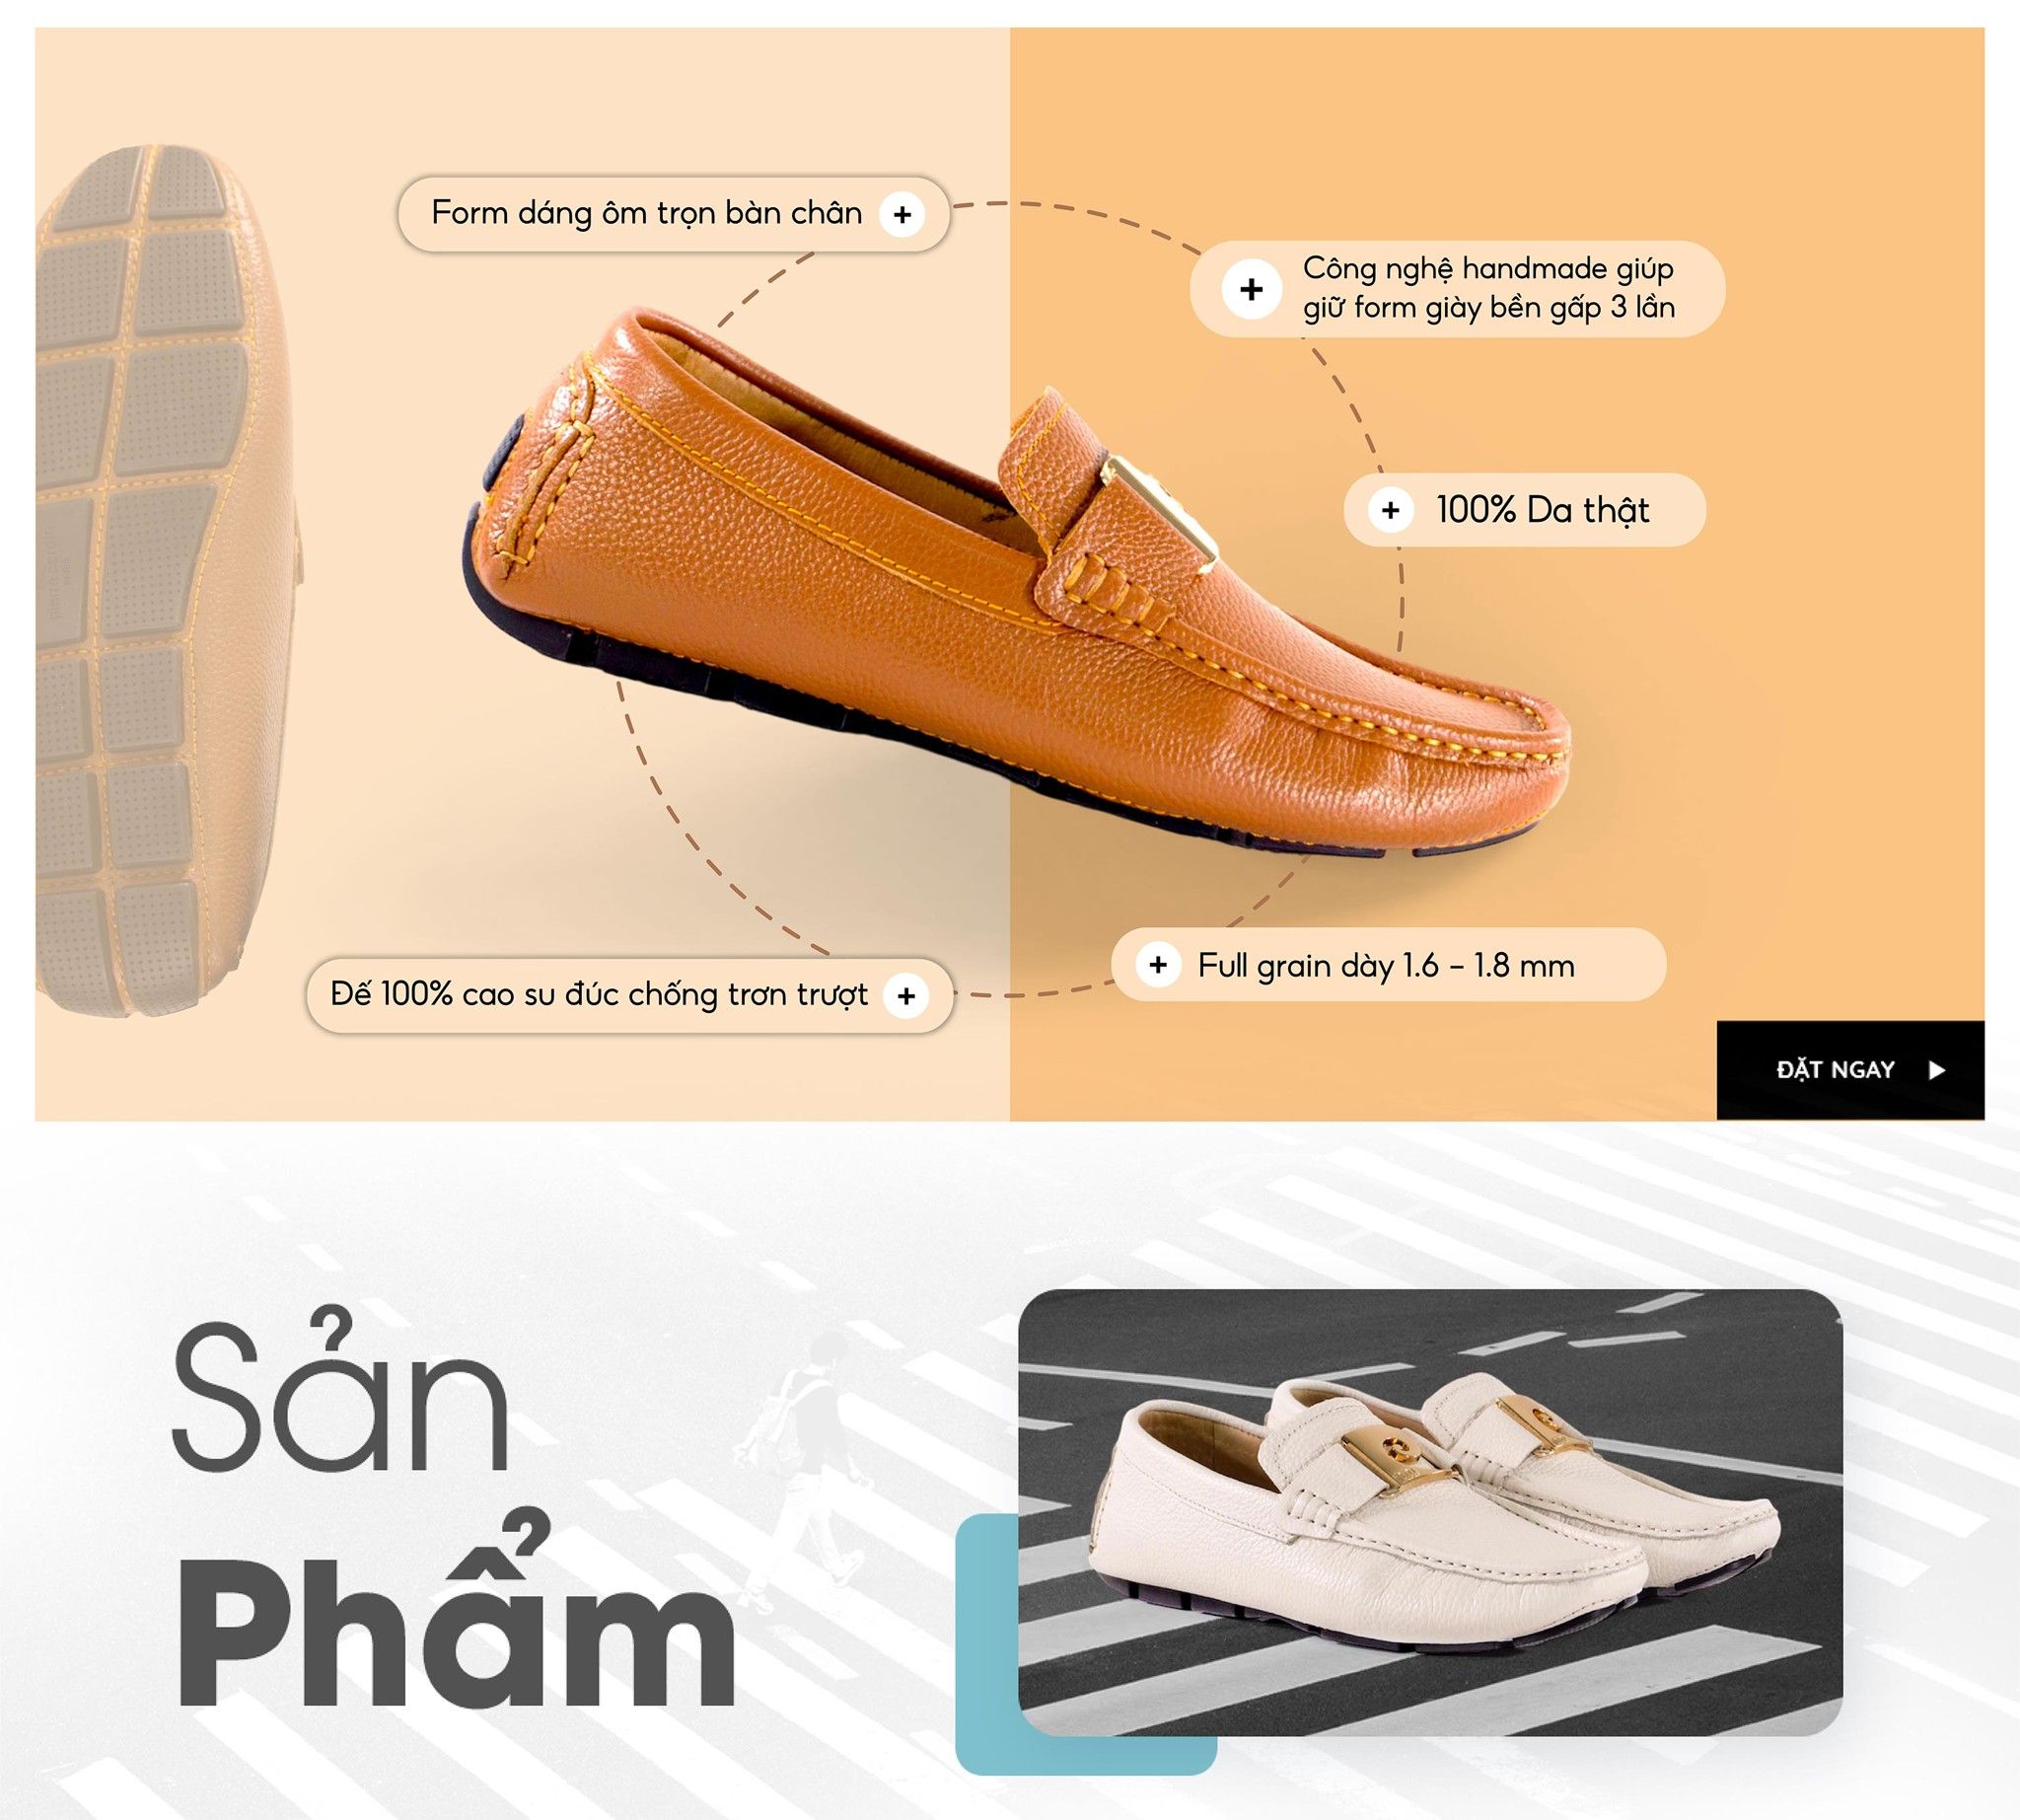 Pierre Cardin Paris Vietnam: Sản Phẩm Đặt Trước (PCMFWLH 520) + Nhận quà Tặng Thời Trang (3 Đôi Vớ Oscar Fashion Trị giá 400K)